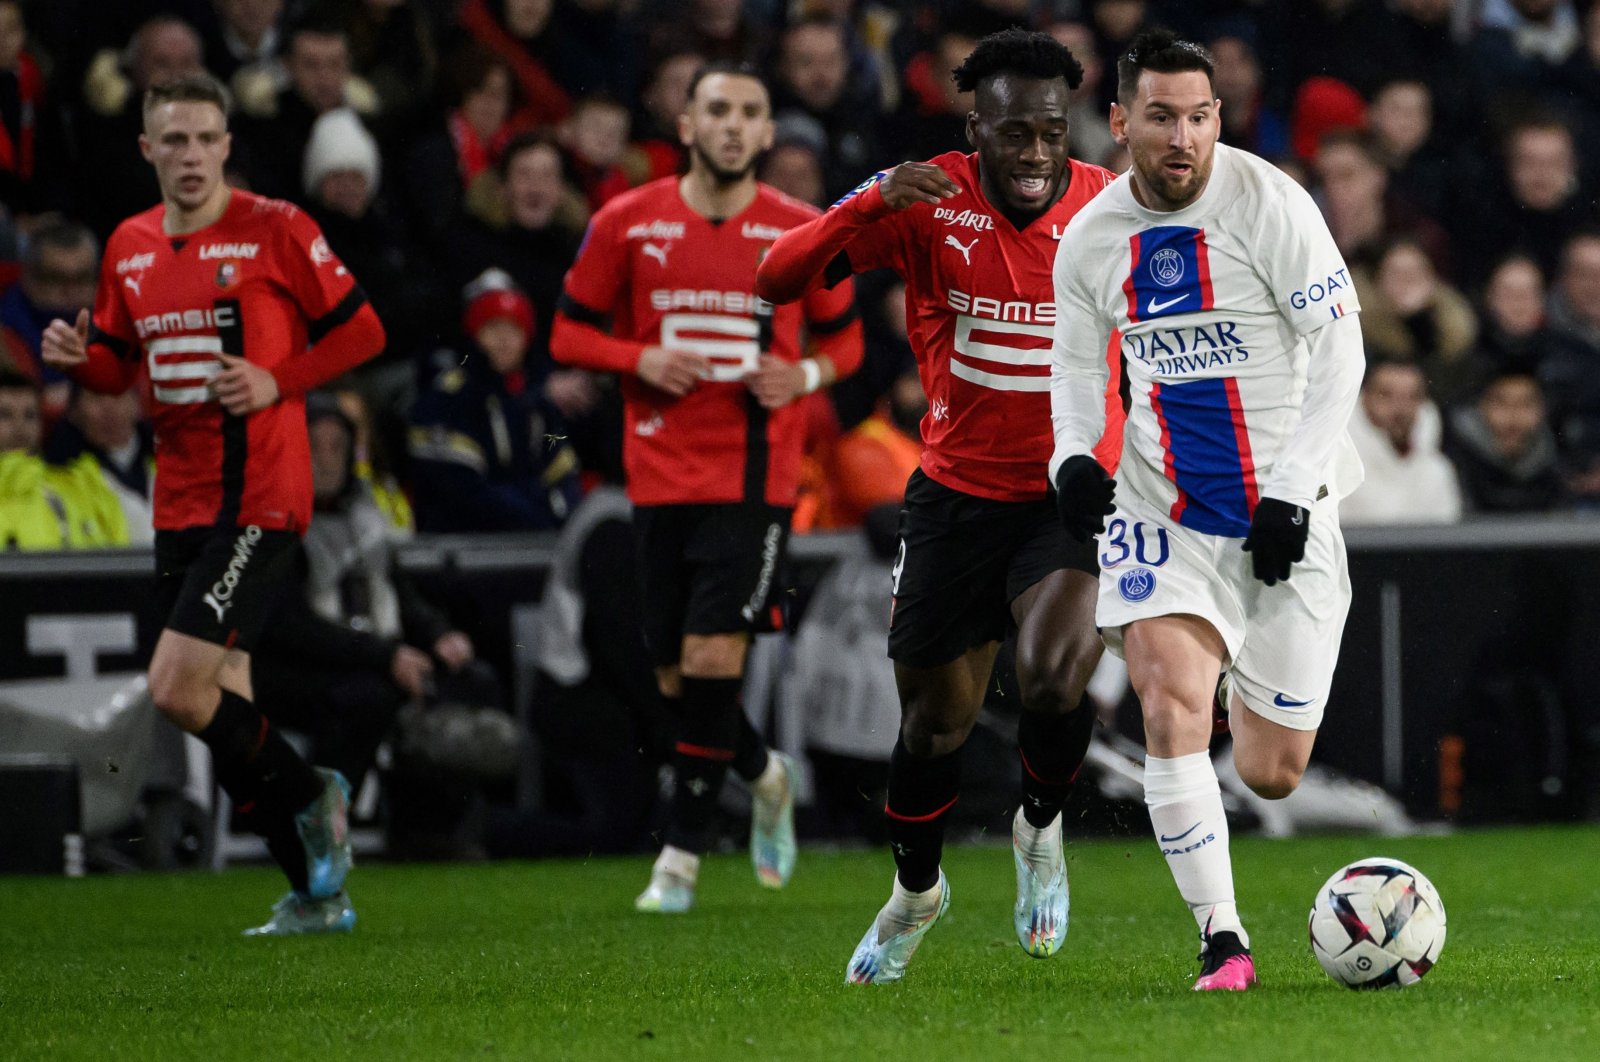 Rennes merendahkan pimpinan PSG sementara Monaco memusnahkan Ajaccio 7-1